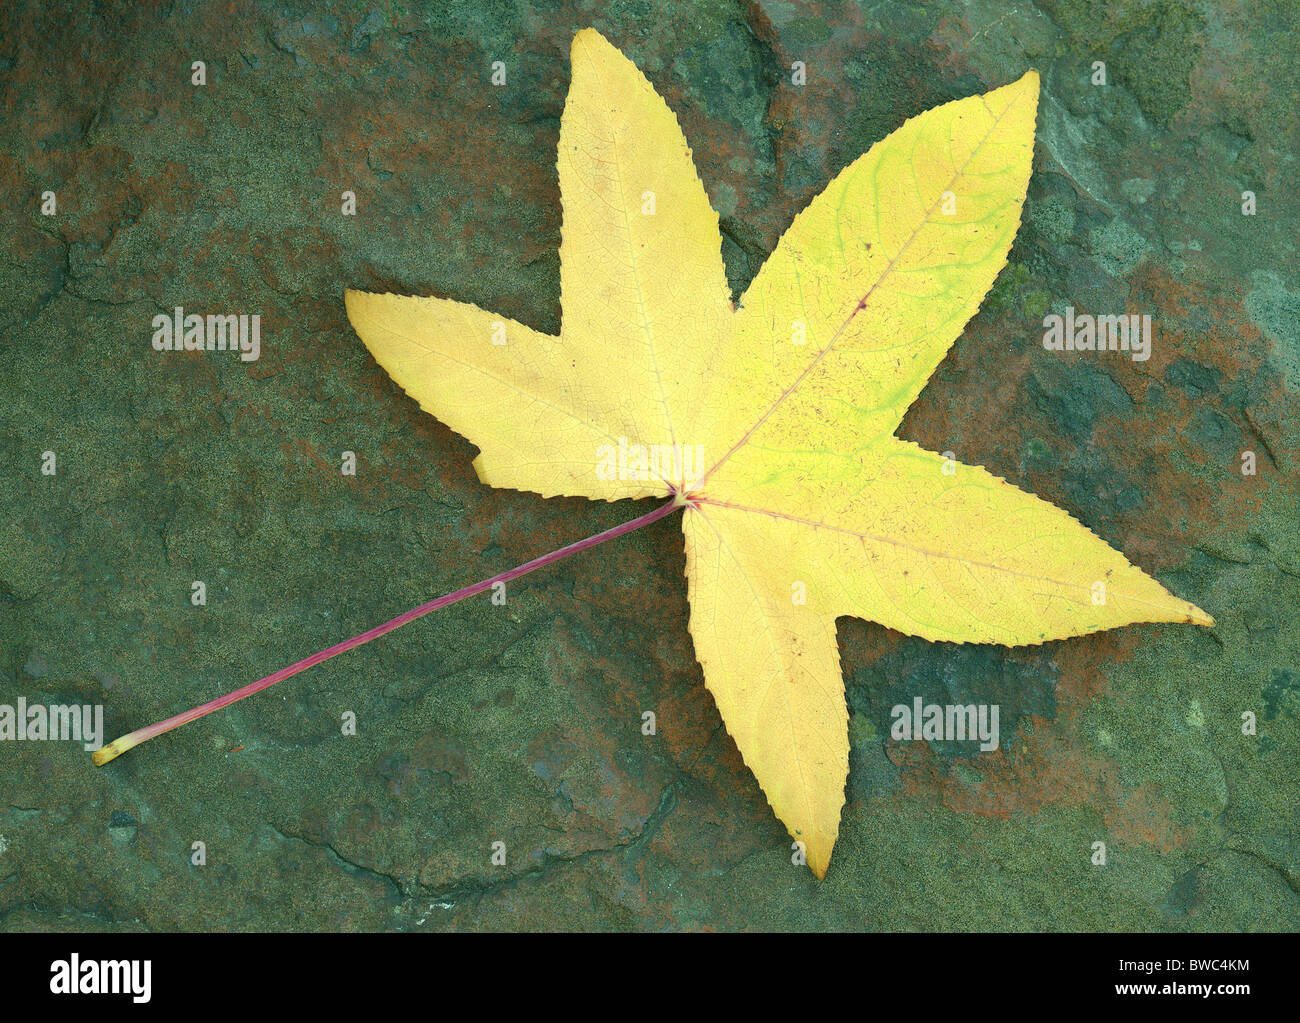 Amberbaum gelbe Baum Herbst Blatt auf den grünlichen Stein Liquidambar styraciflua Stockfoto